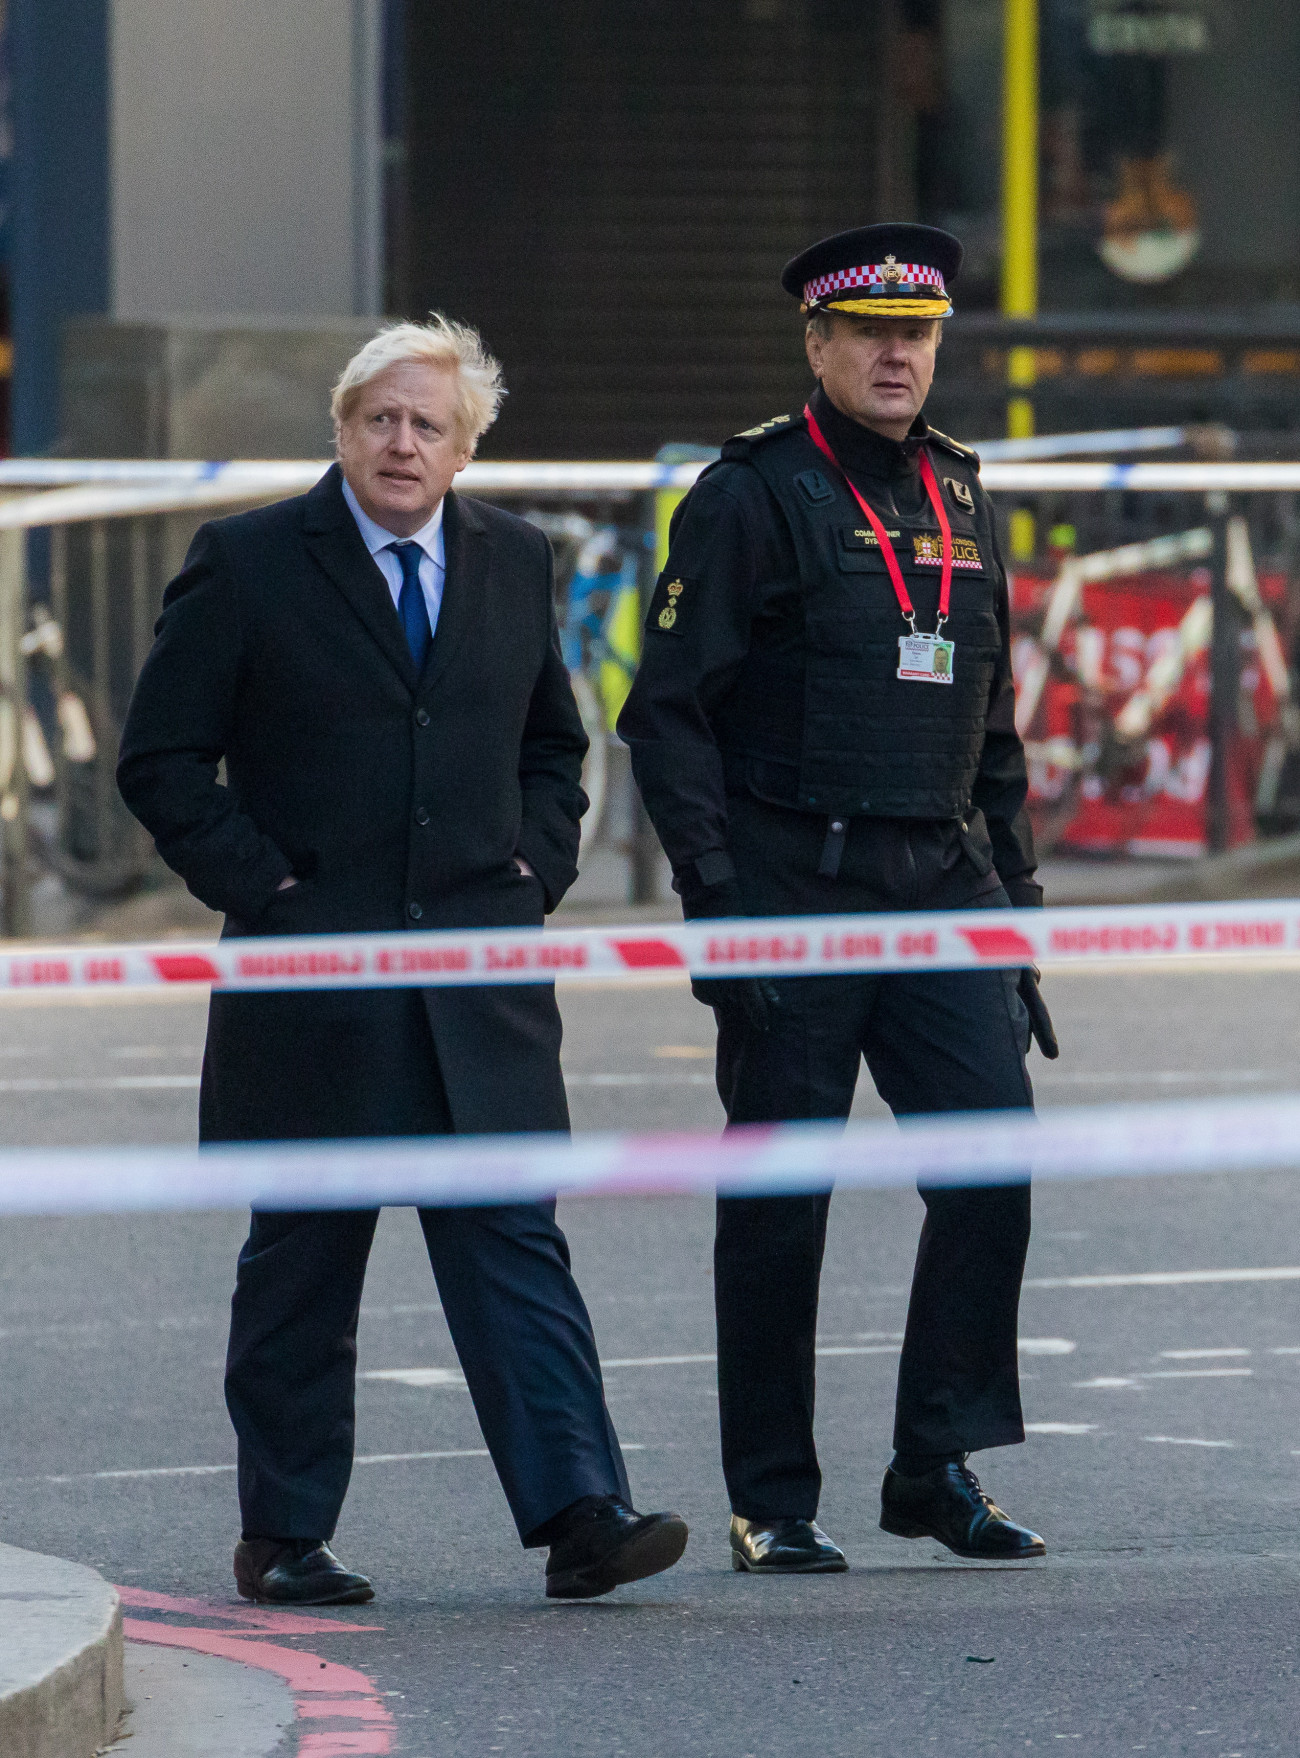 Boris Johnson brit miniszterelnök (k) Ian Dyson rendőrtiszt társaságában az előző napi késeléses támadás helyszínén, a brit főváros pénzügyi negyedében, a Cityben, a London híd végében 2019. november 30-án.  A támadó, a 28 éves Usman Khan két embert megölt és hármat megsebesített, mielőtt járókelők lefogták, majd rendőrök agyonlőtték.
MTI/EPA/Vickie Flores